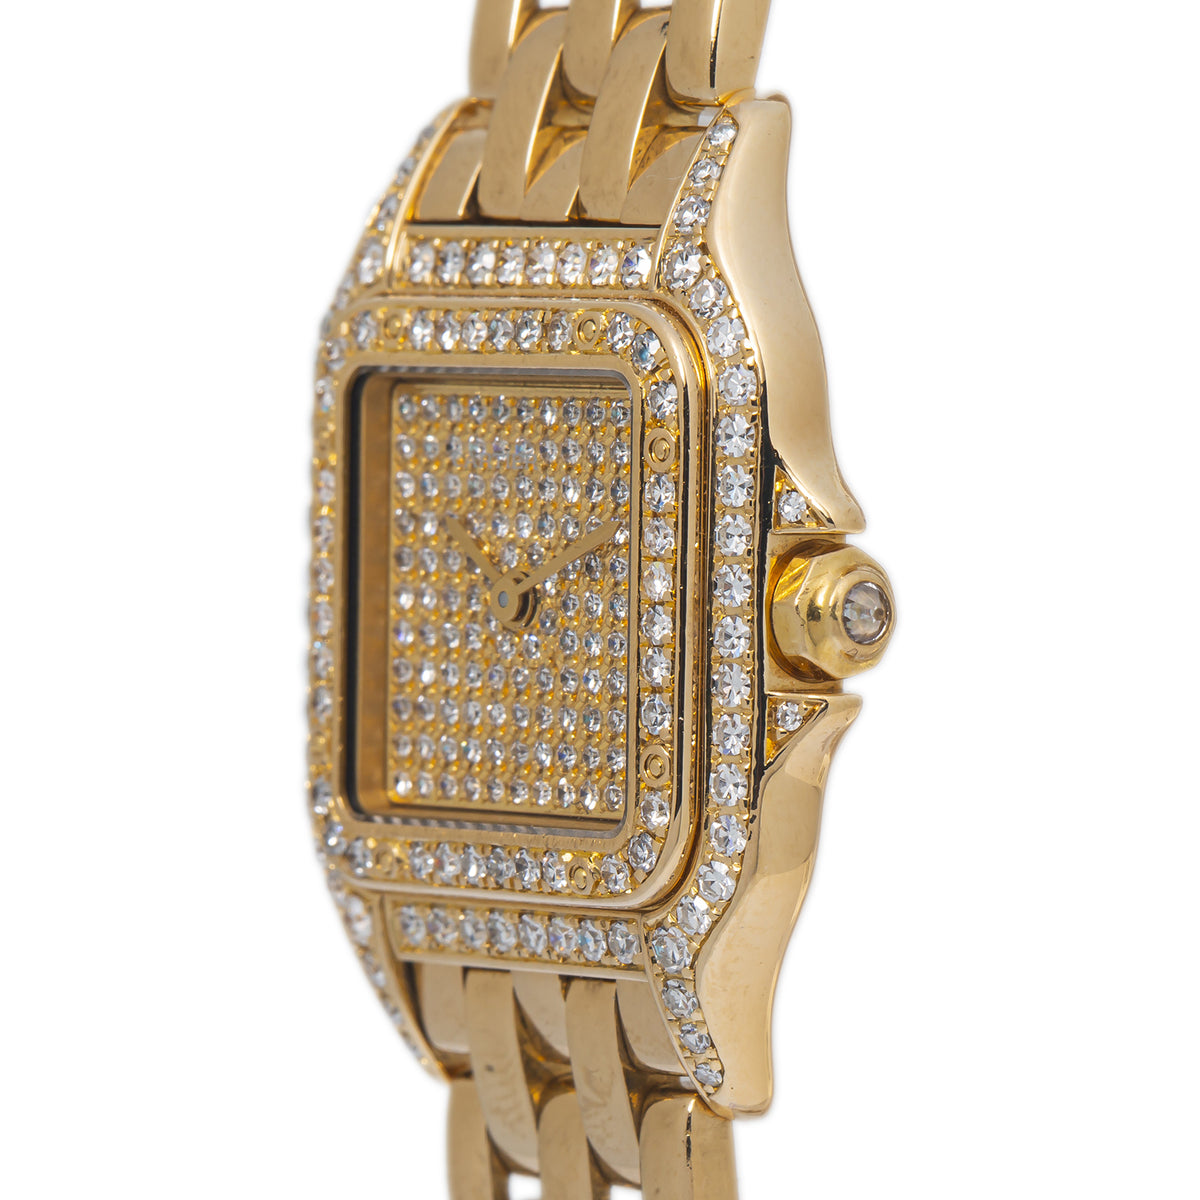 Cartier Panthere WF3072B9 1280 2 18k Gold Factory Diamonds Quartz Watch 22mm